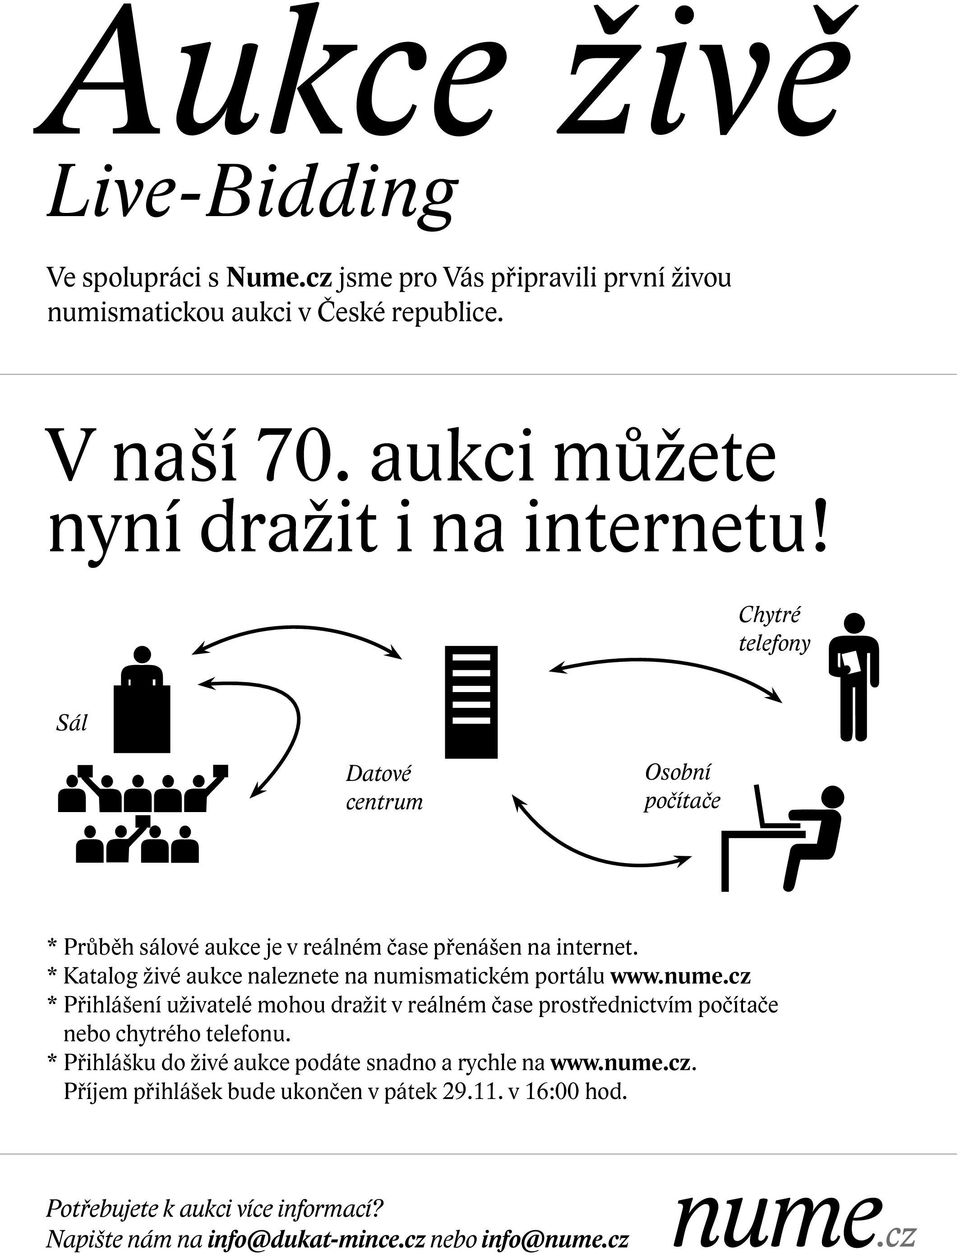 * Katalog živé aukce naleznete na numismatickém portálu www.nume.cz * Přihlášení uživatelé mohou dražit v reálném čase prostřednictvím počítače nebo chytrého telefonu.